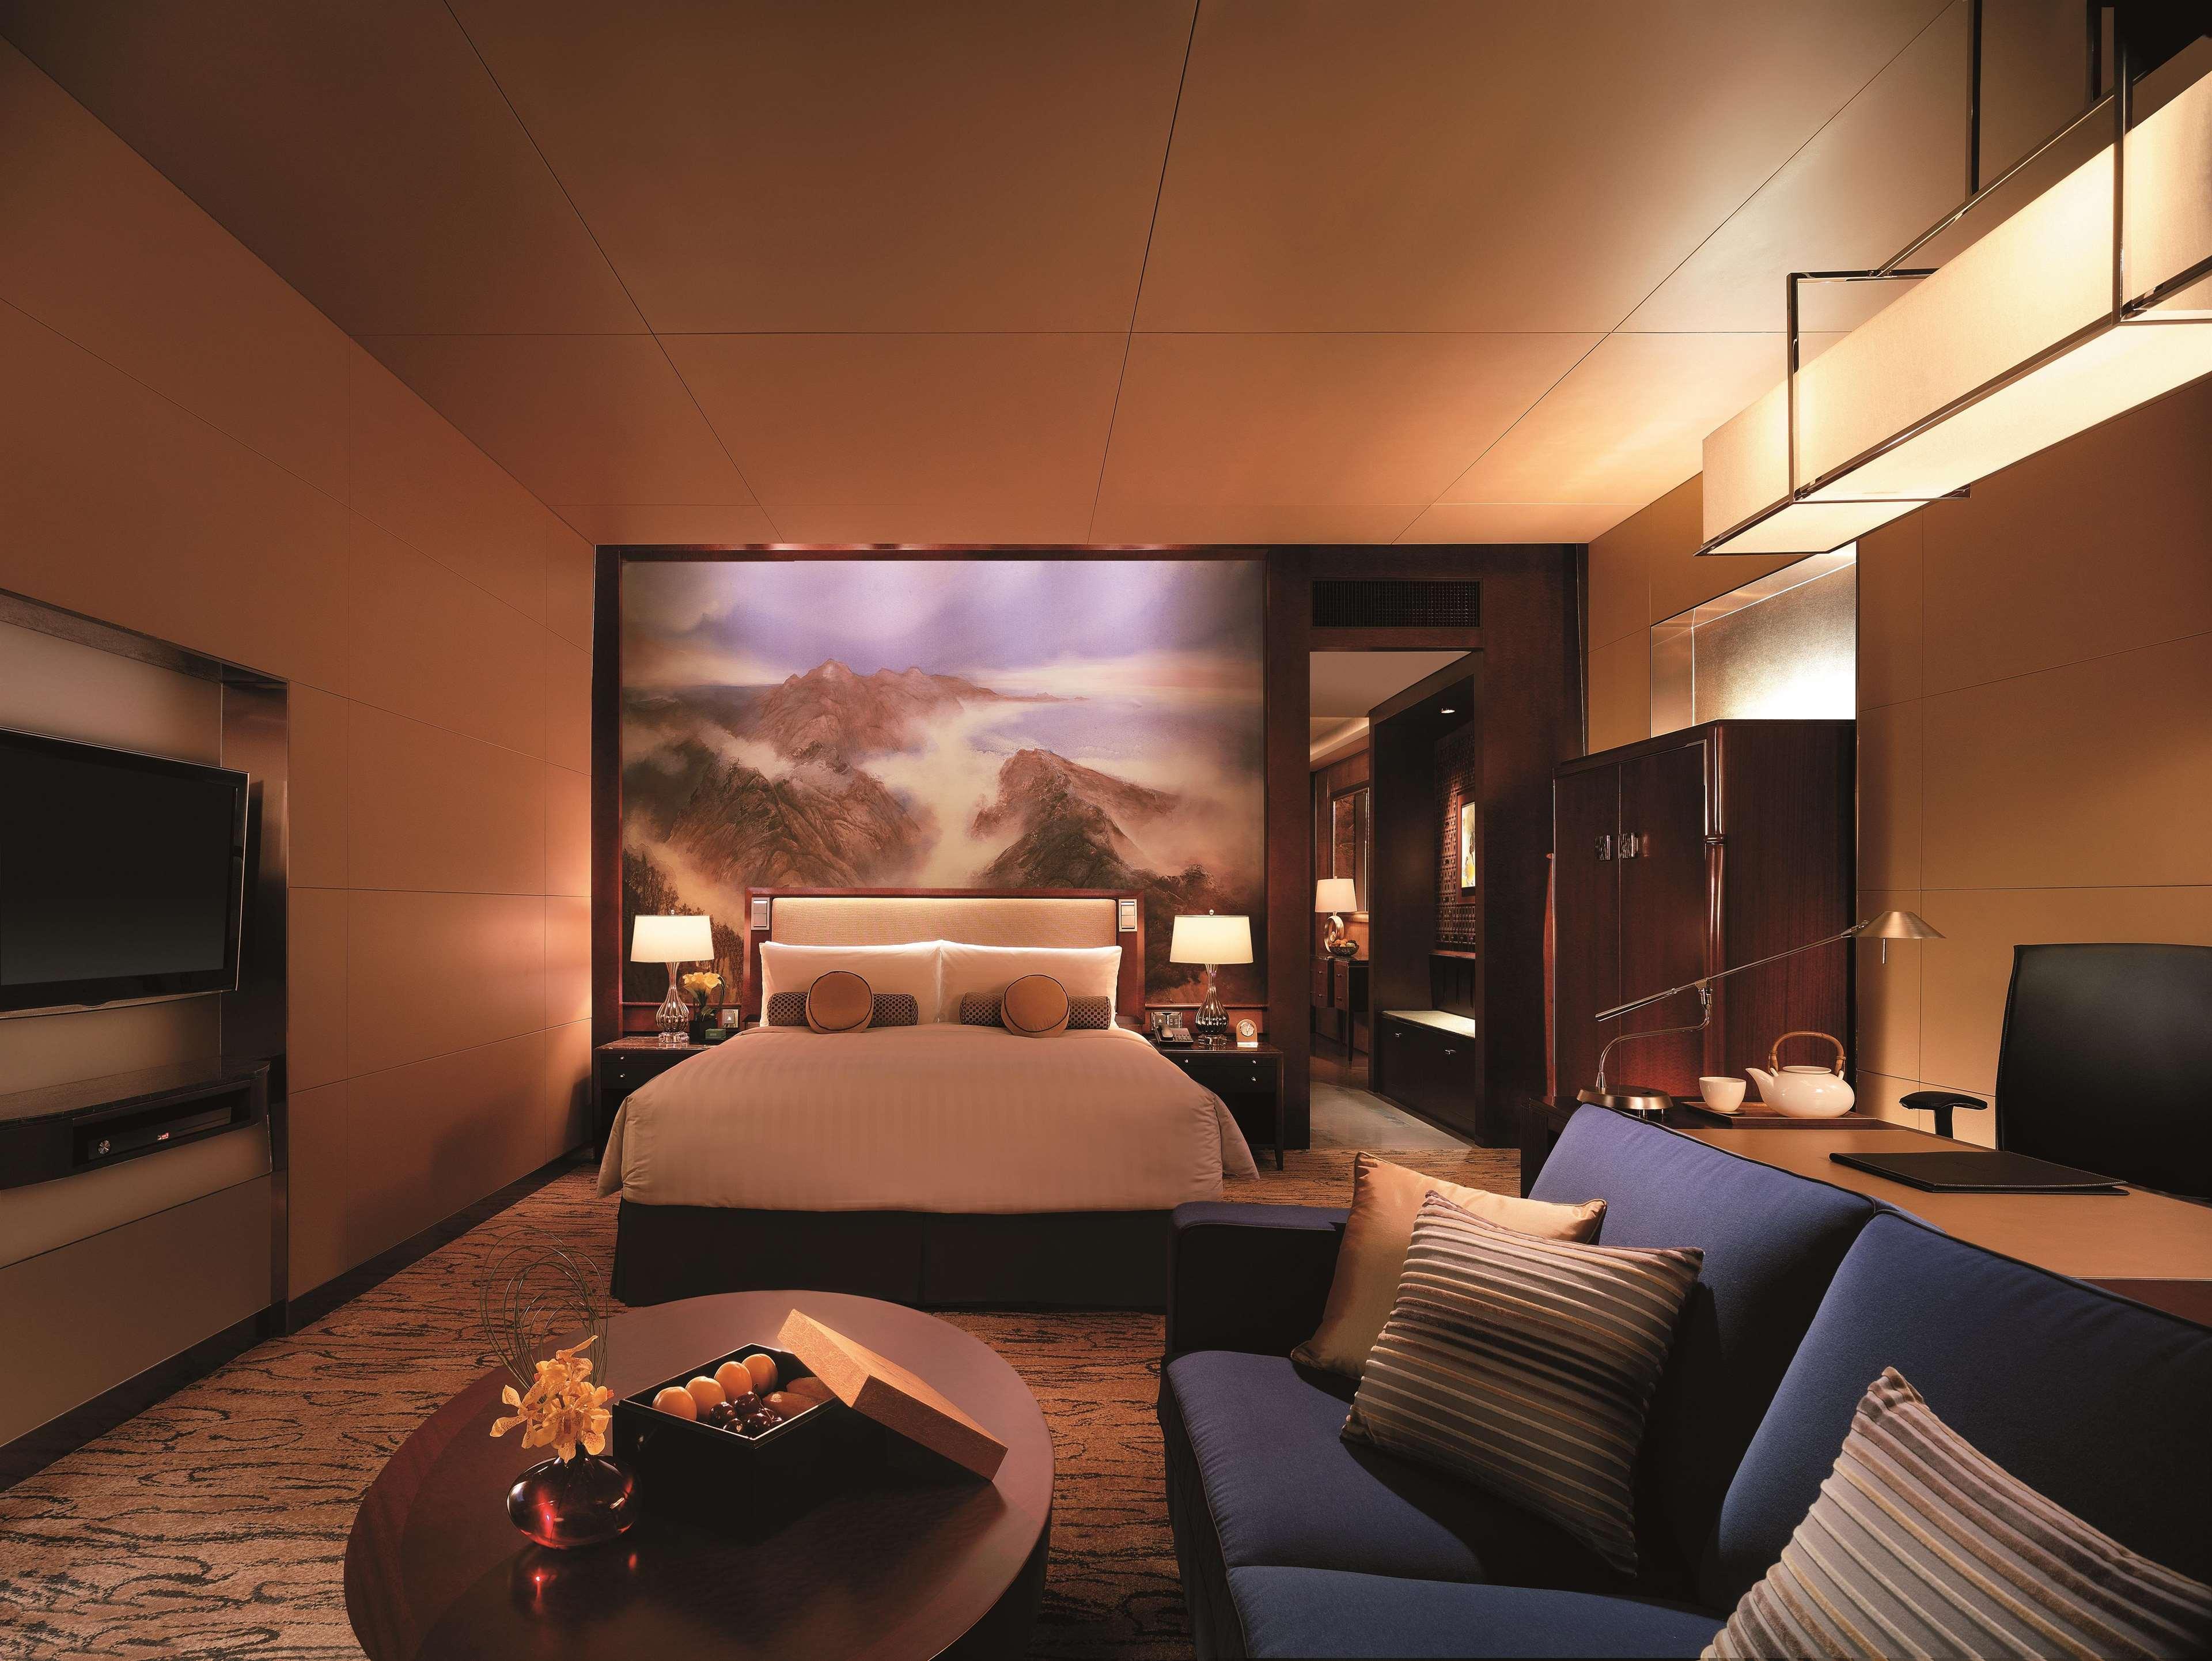 מלון China World Summit Wing, בייג'ינג מראה חיצוני תמונה